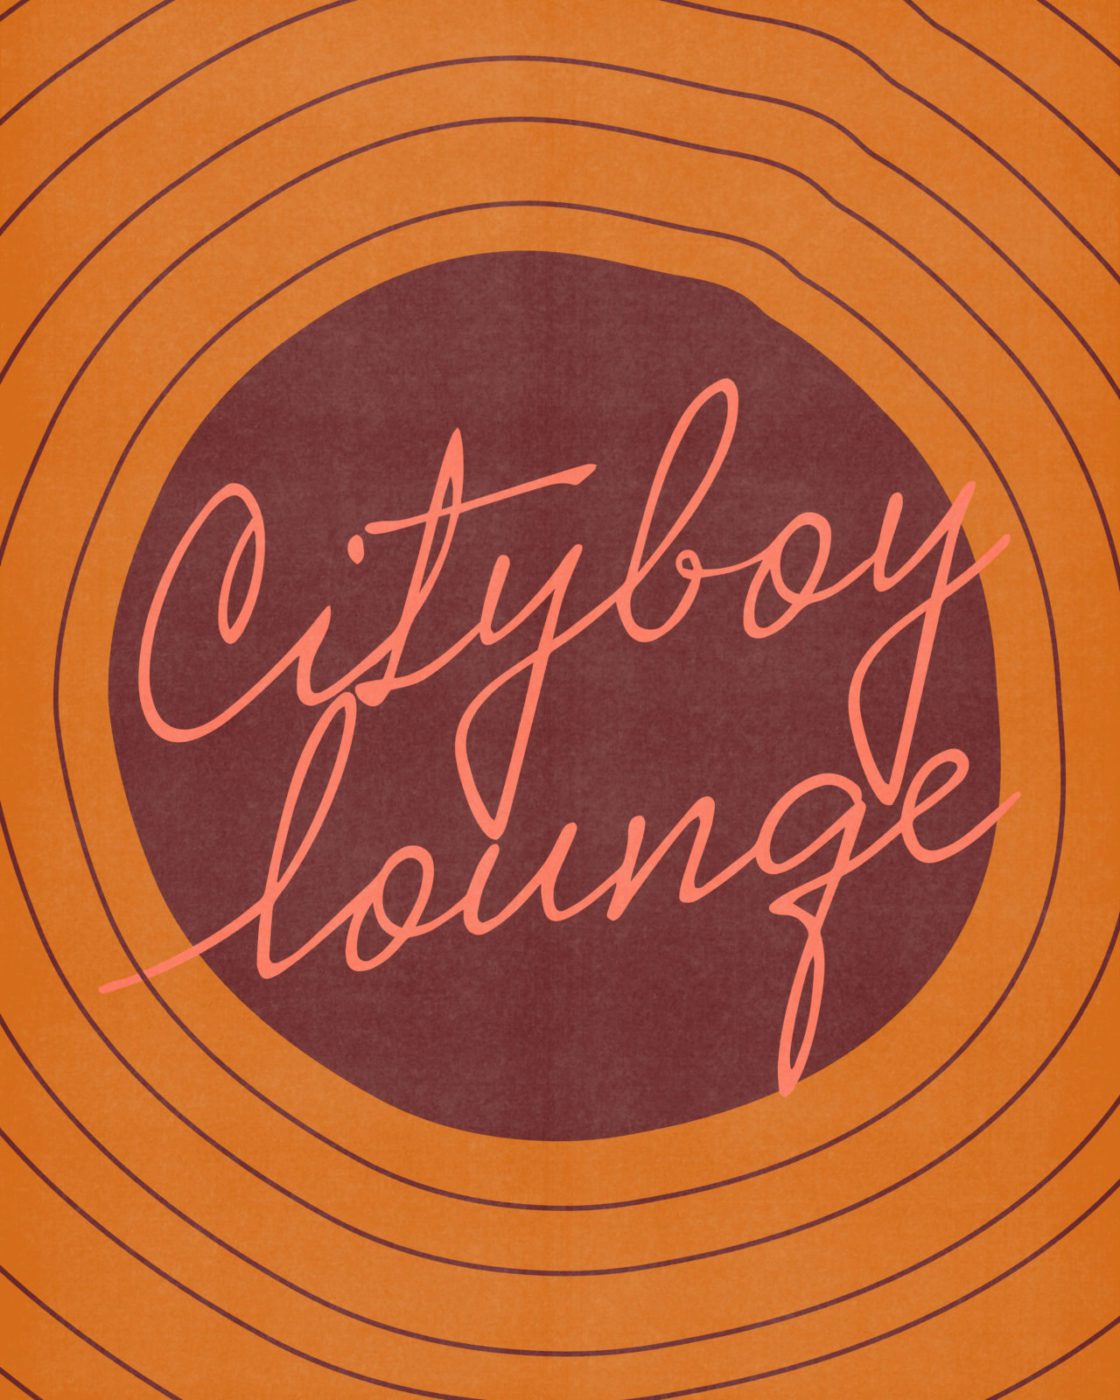 Cityboy Lounge promo